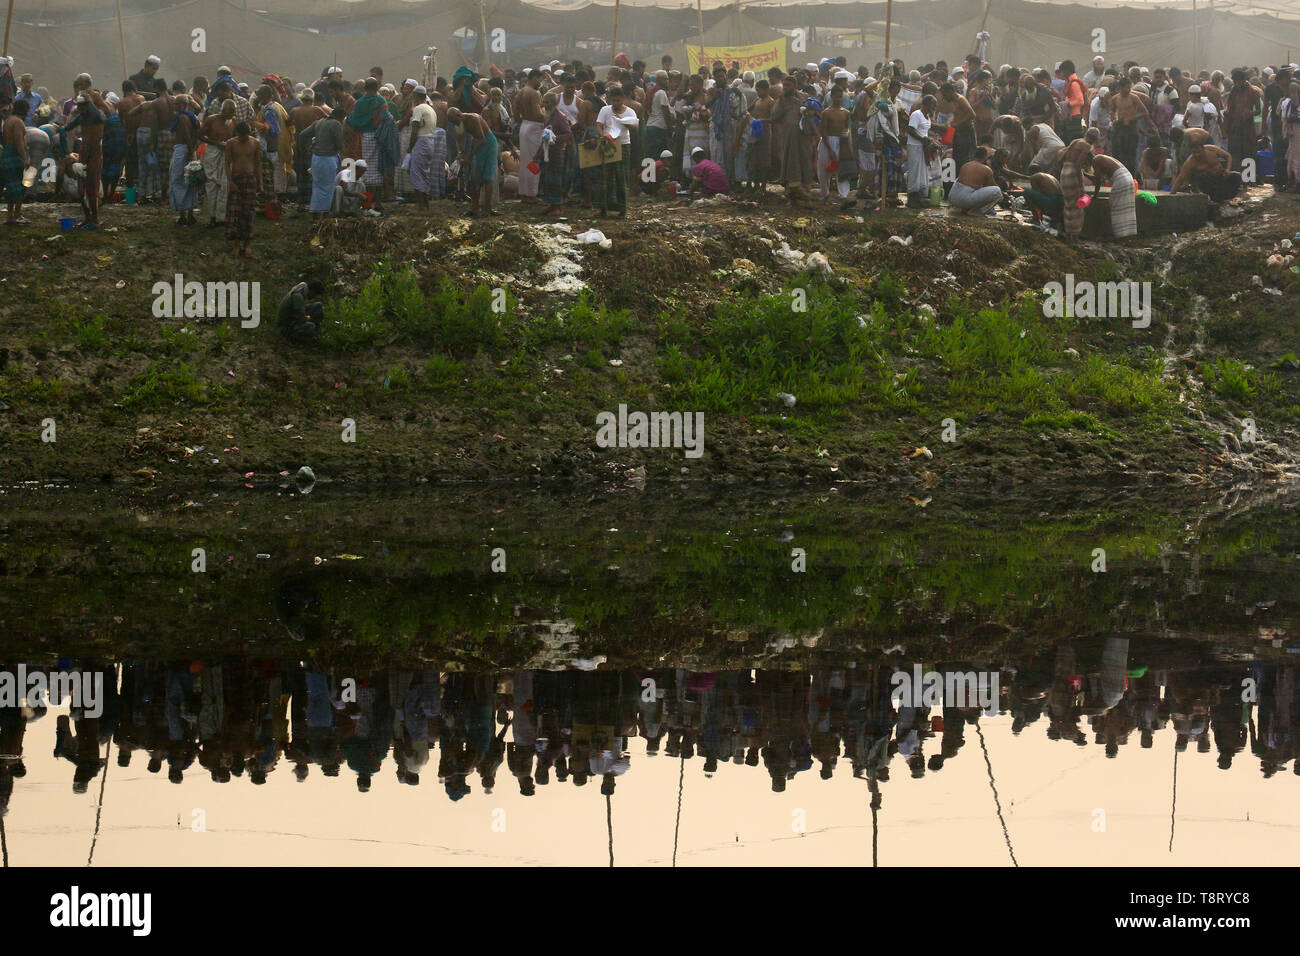 Les dévots baignades dans un coin de l'Biswa Ijtema locaux sur la banque du fleuve Turag à Tongi à Gazipur. Biswa Ijtema le deuxième plus grand rassemblement Banque D'Images